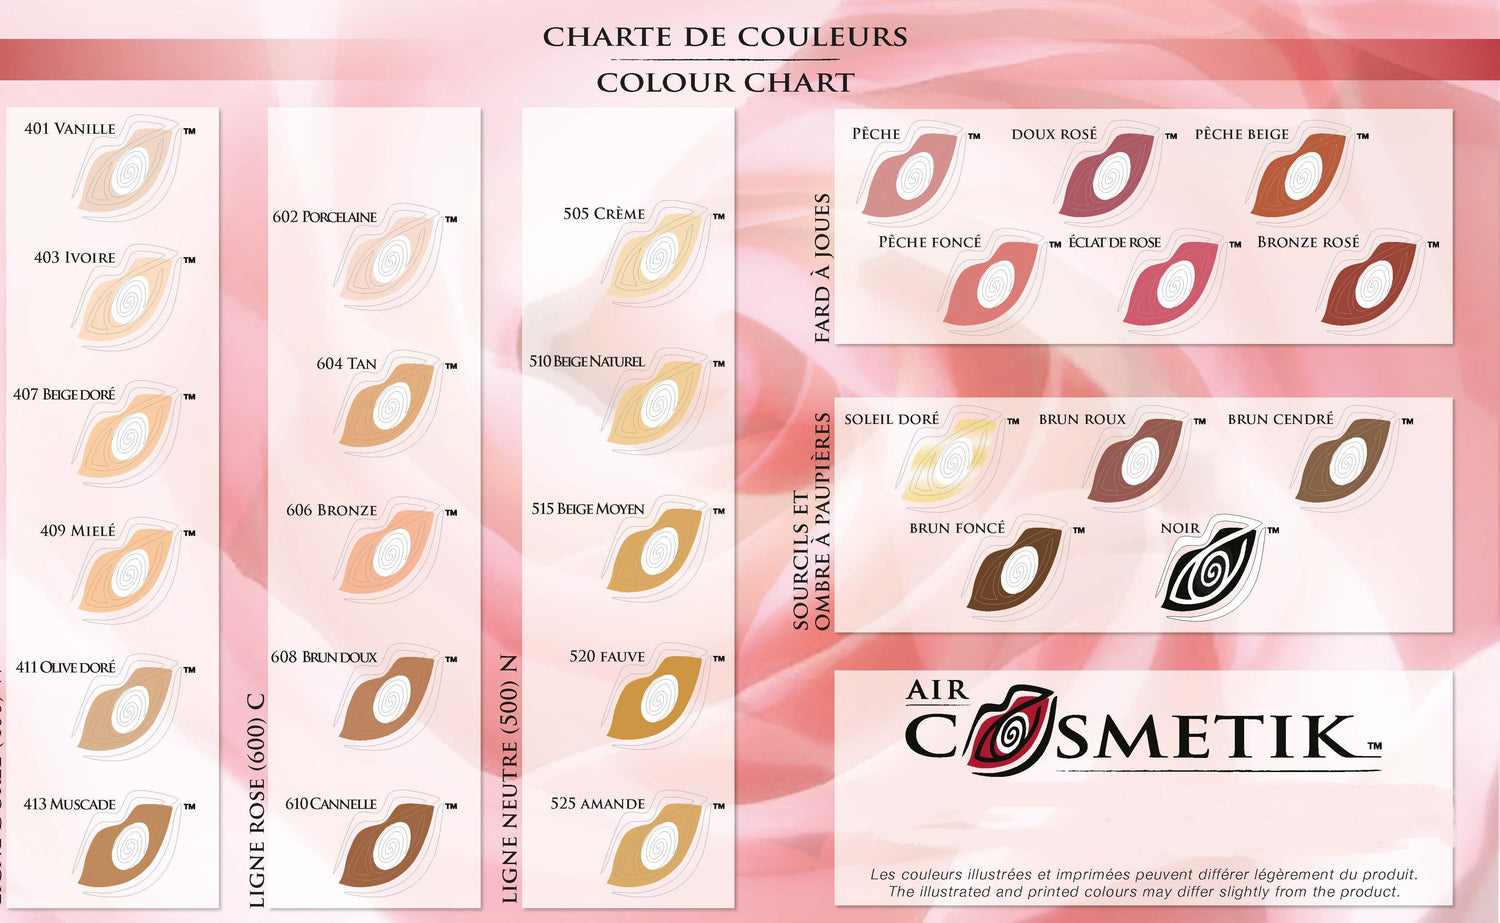 Colour chart/ Charte de Couleurs